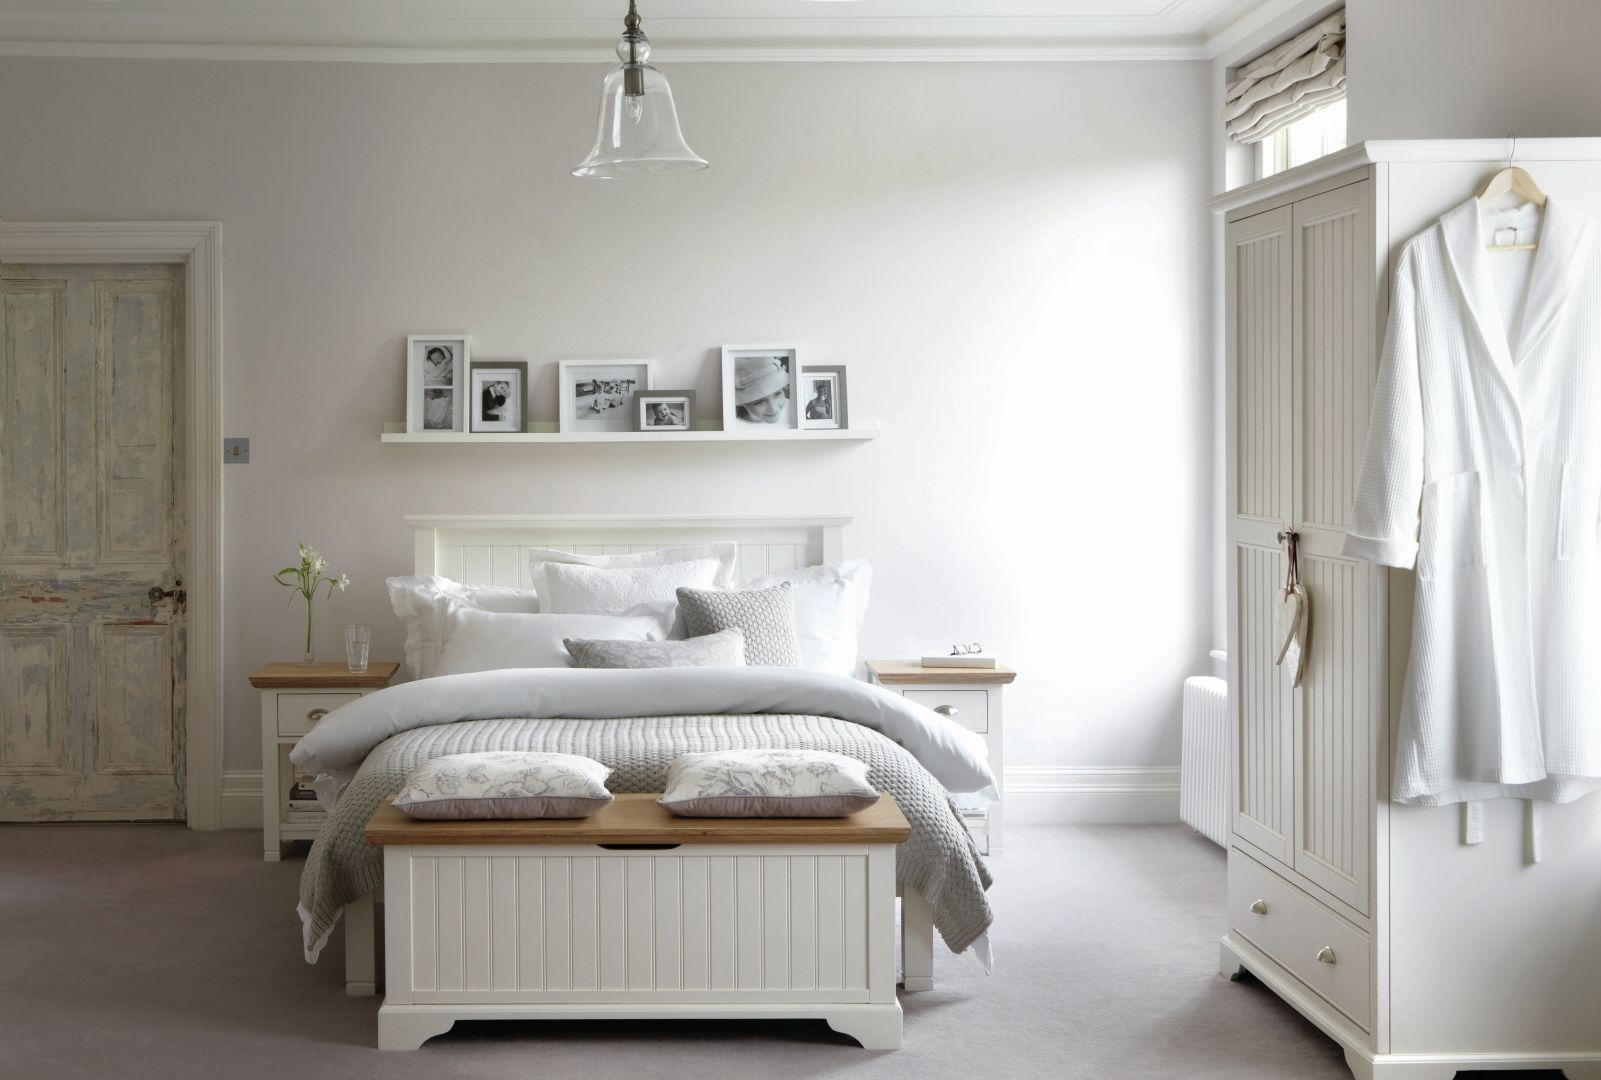 Białe meble z wyflowanymi frontami doskonale pasują do sypialni w stylu skandynawskim. Prezentują się bardzo świeżo. Fot. Homebase